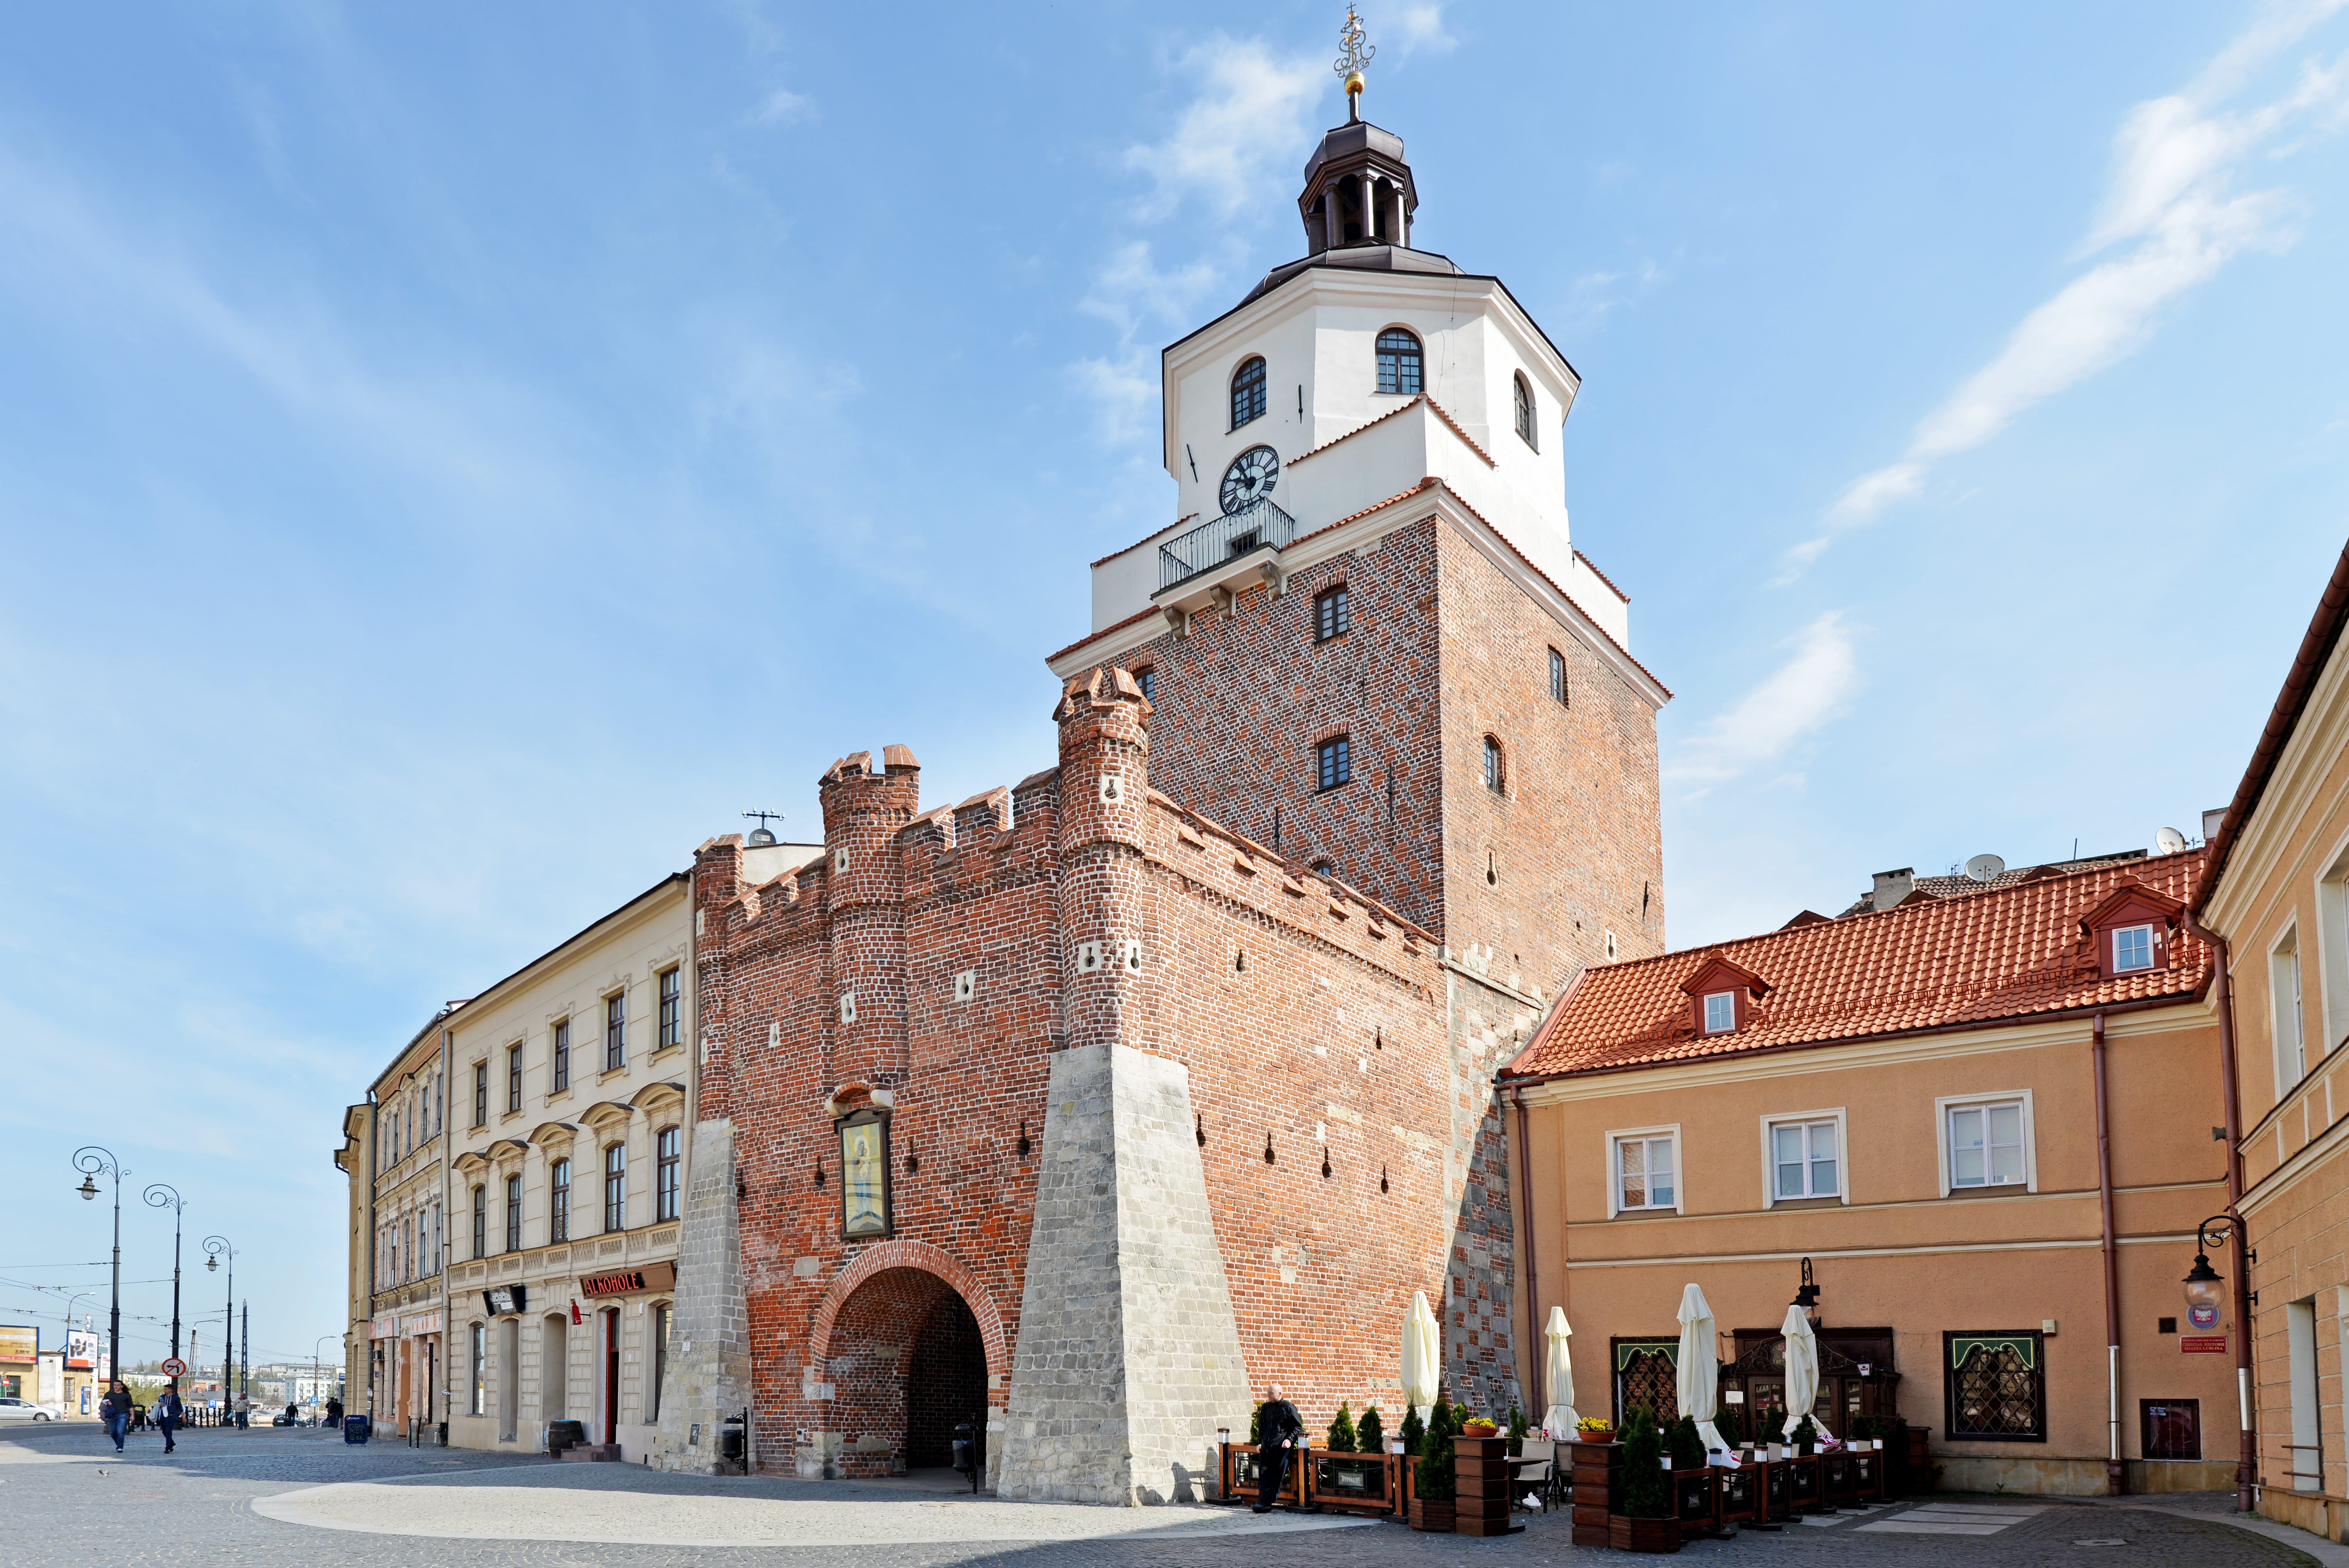 Краковские ворота, Люблин